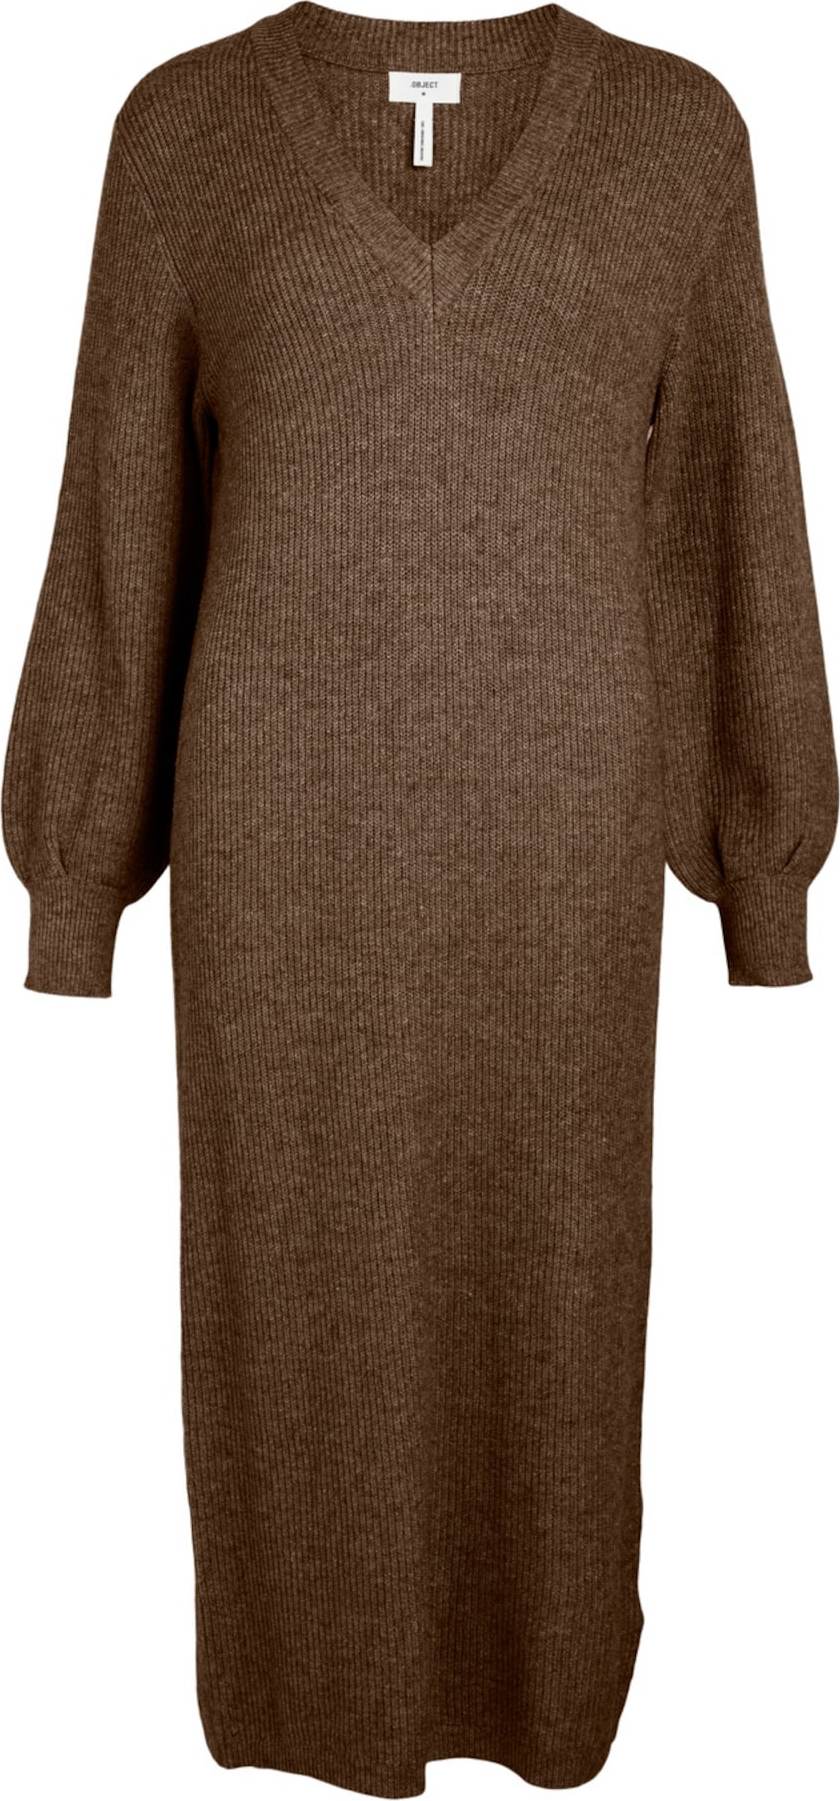 OBJECT Úpletové šaty 'Malena' hnědý melír